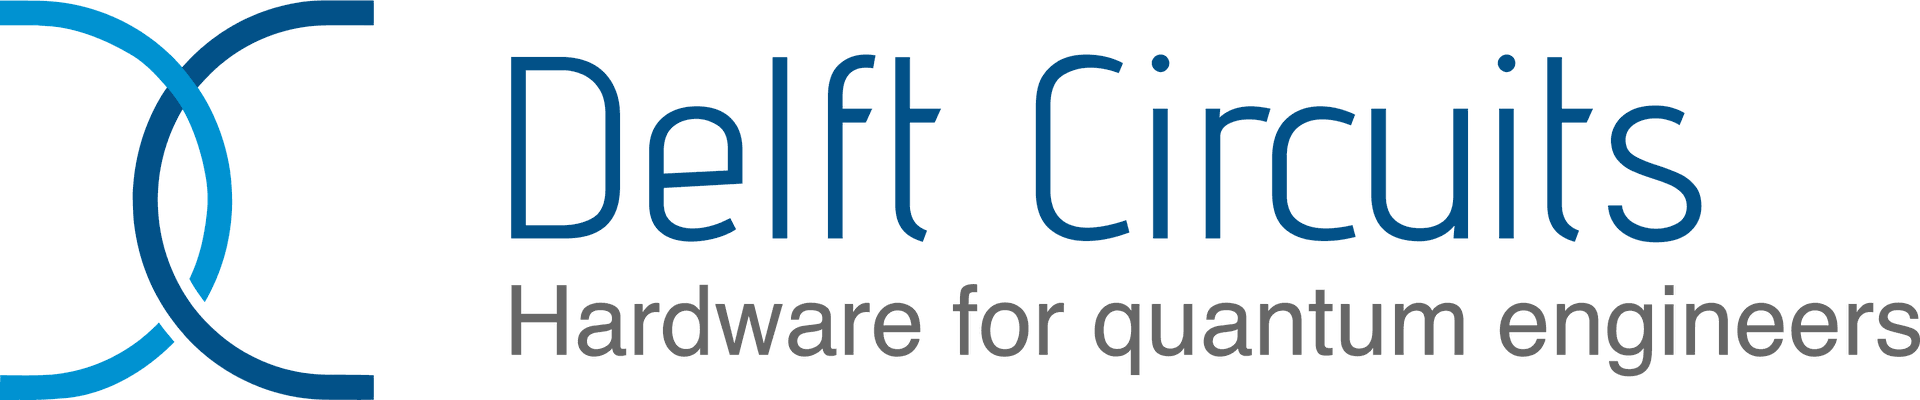 Delft Circuits logo